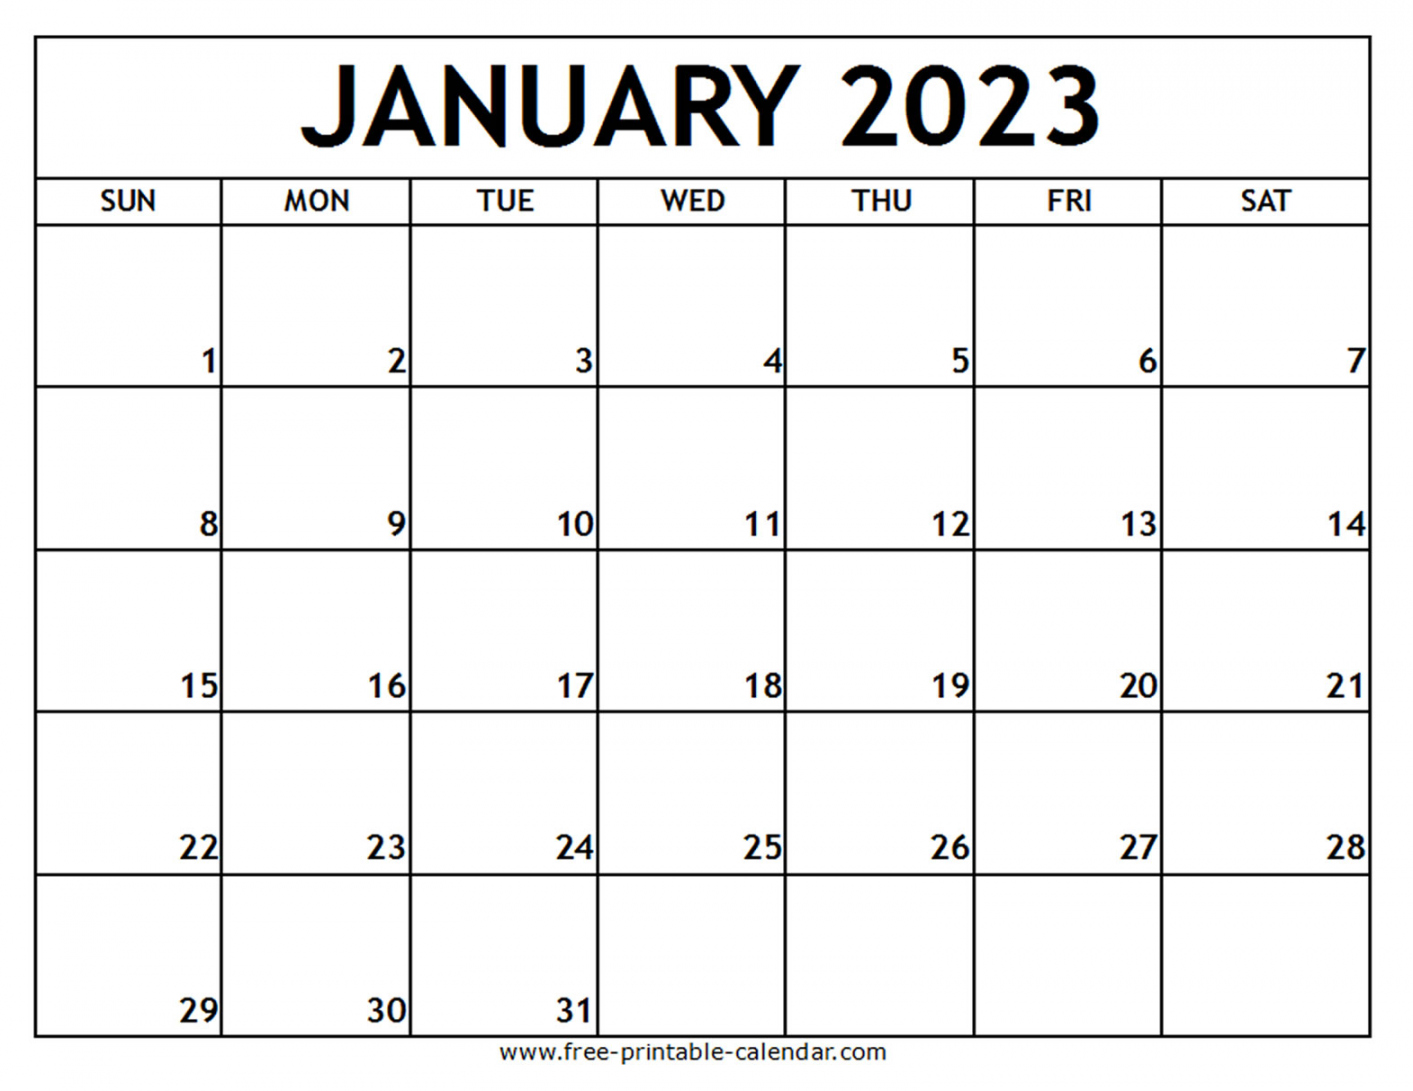 January 2023 Calendar Printable Free - Printable - January  Printable Calendar - Free-printable-calendar